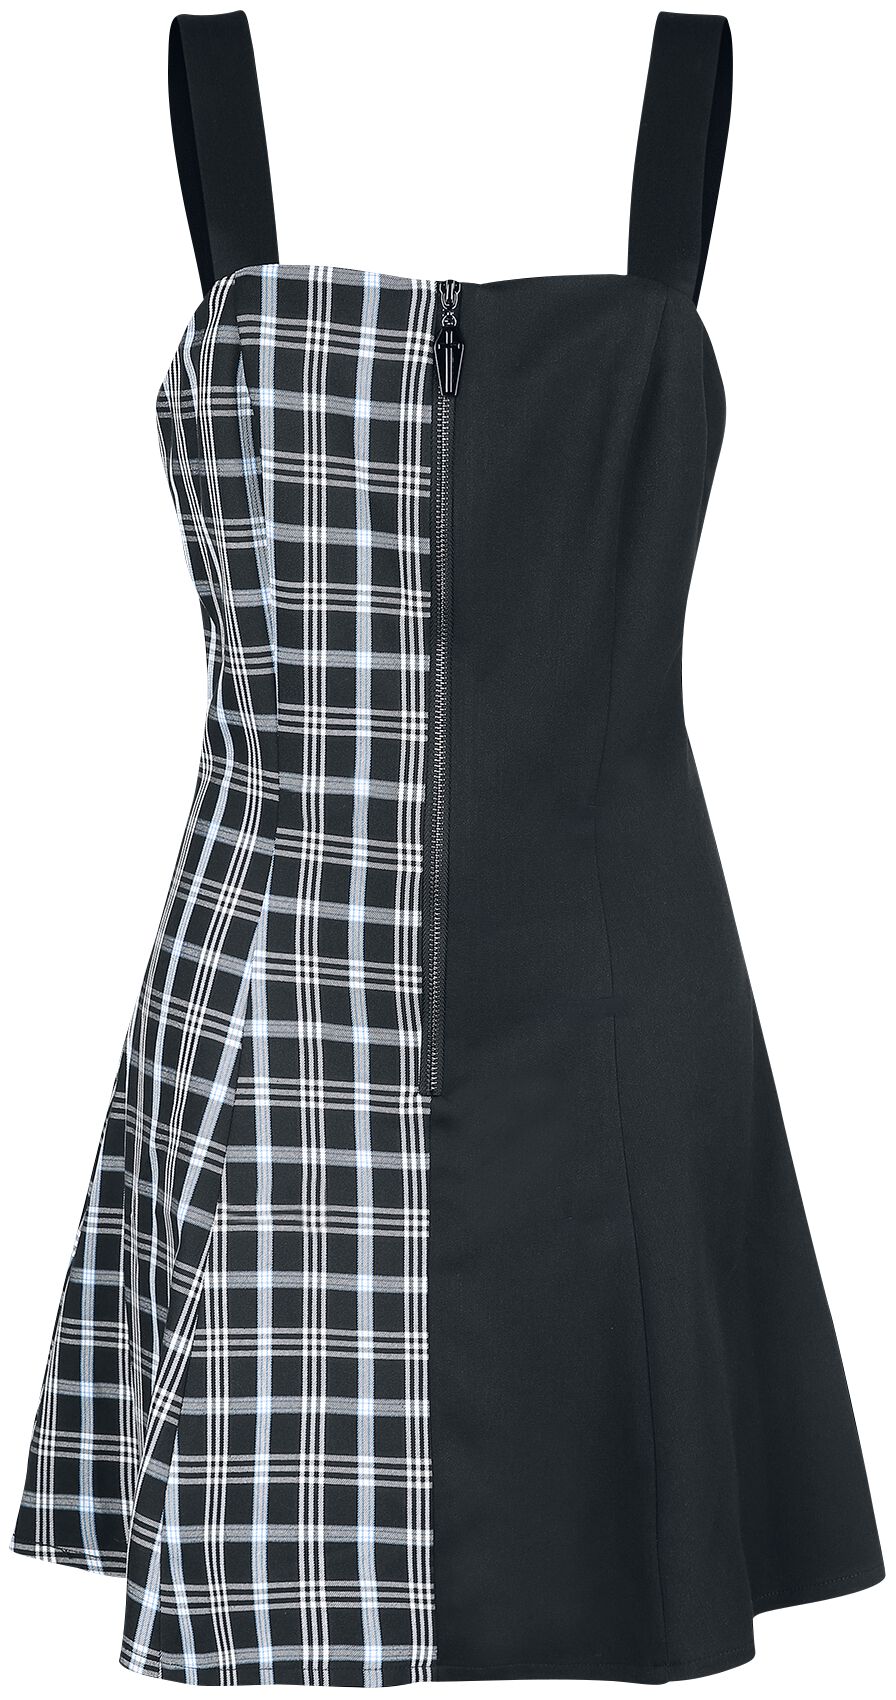 Banned Alternative - Gothic Kurzes Kleid - Death Check Dress - XS bis XXL - für Damen - Größe S - schwarz/blau von Banned Alternative